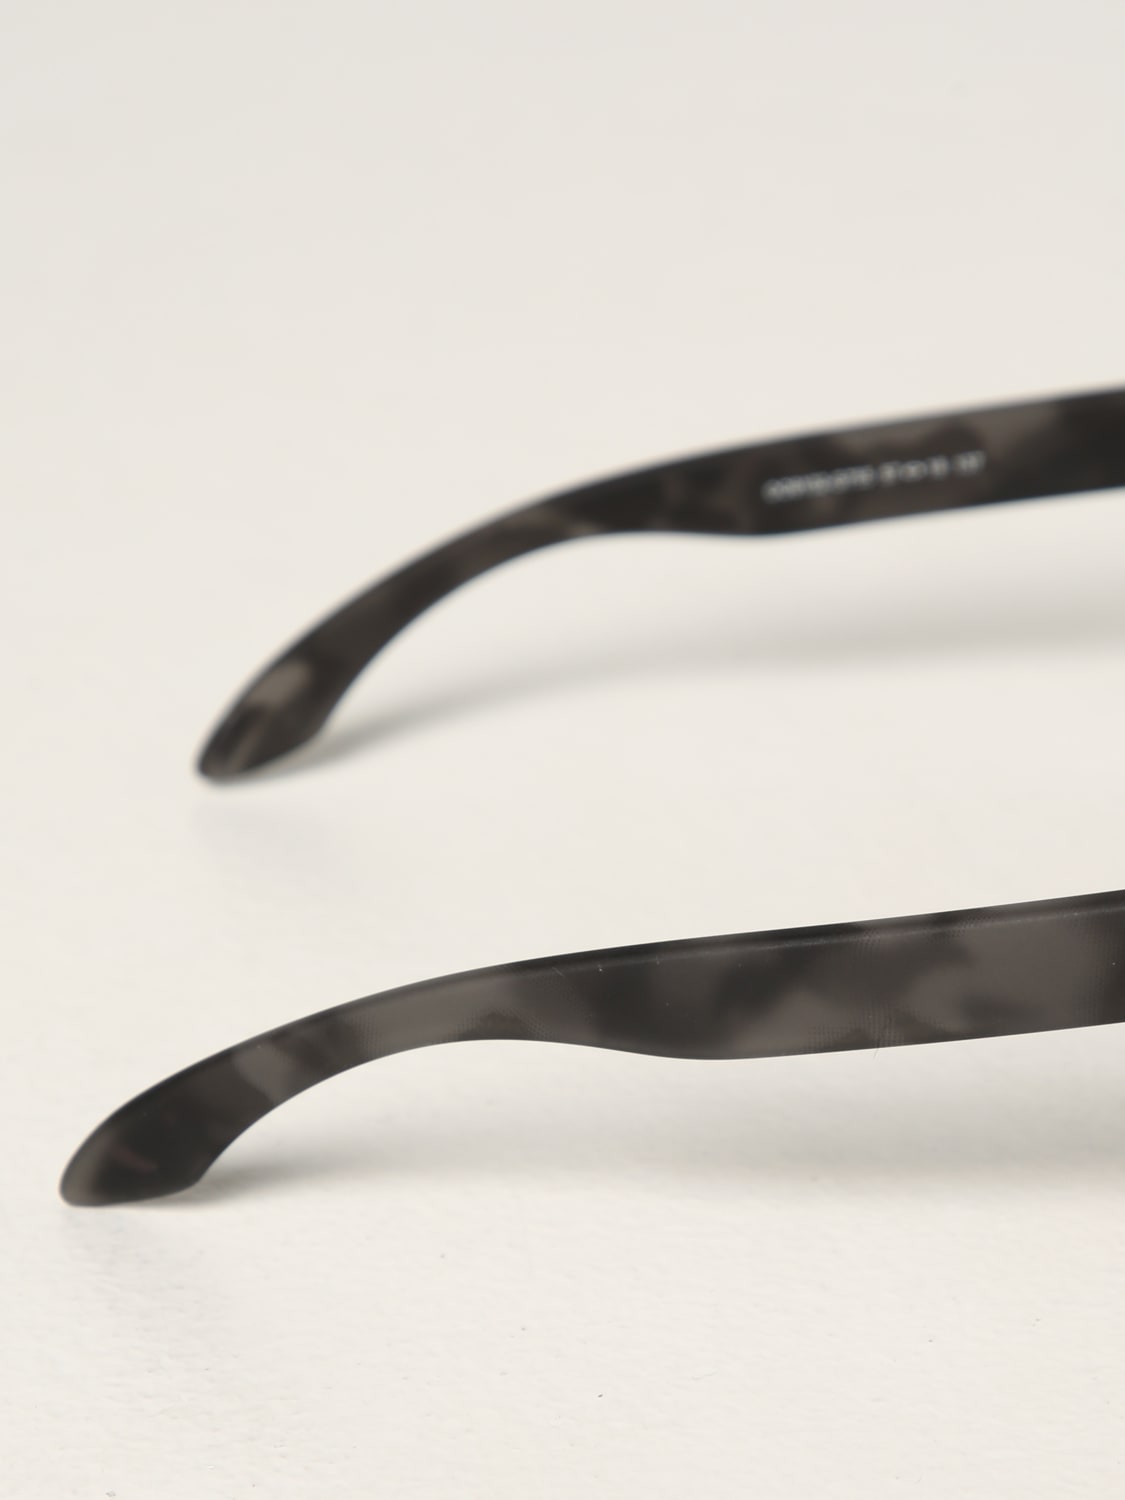 Sunglasses Oakley: Glasses men Oakley grey 2